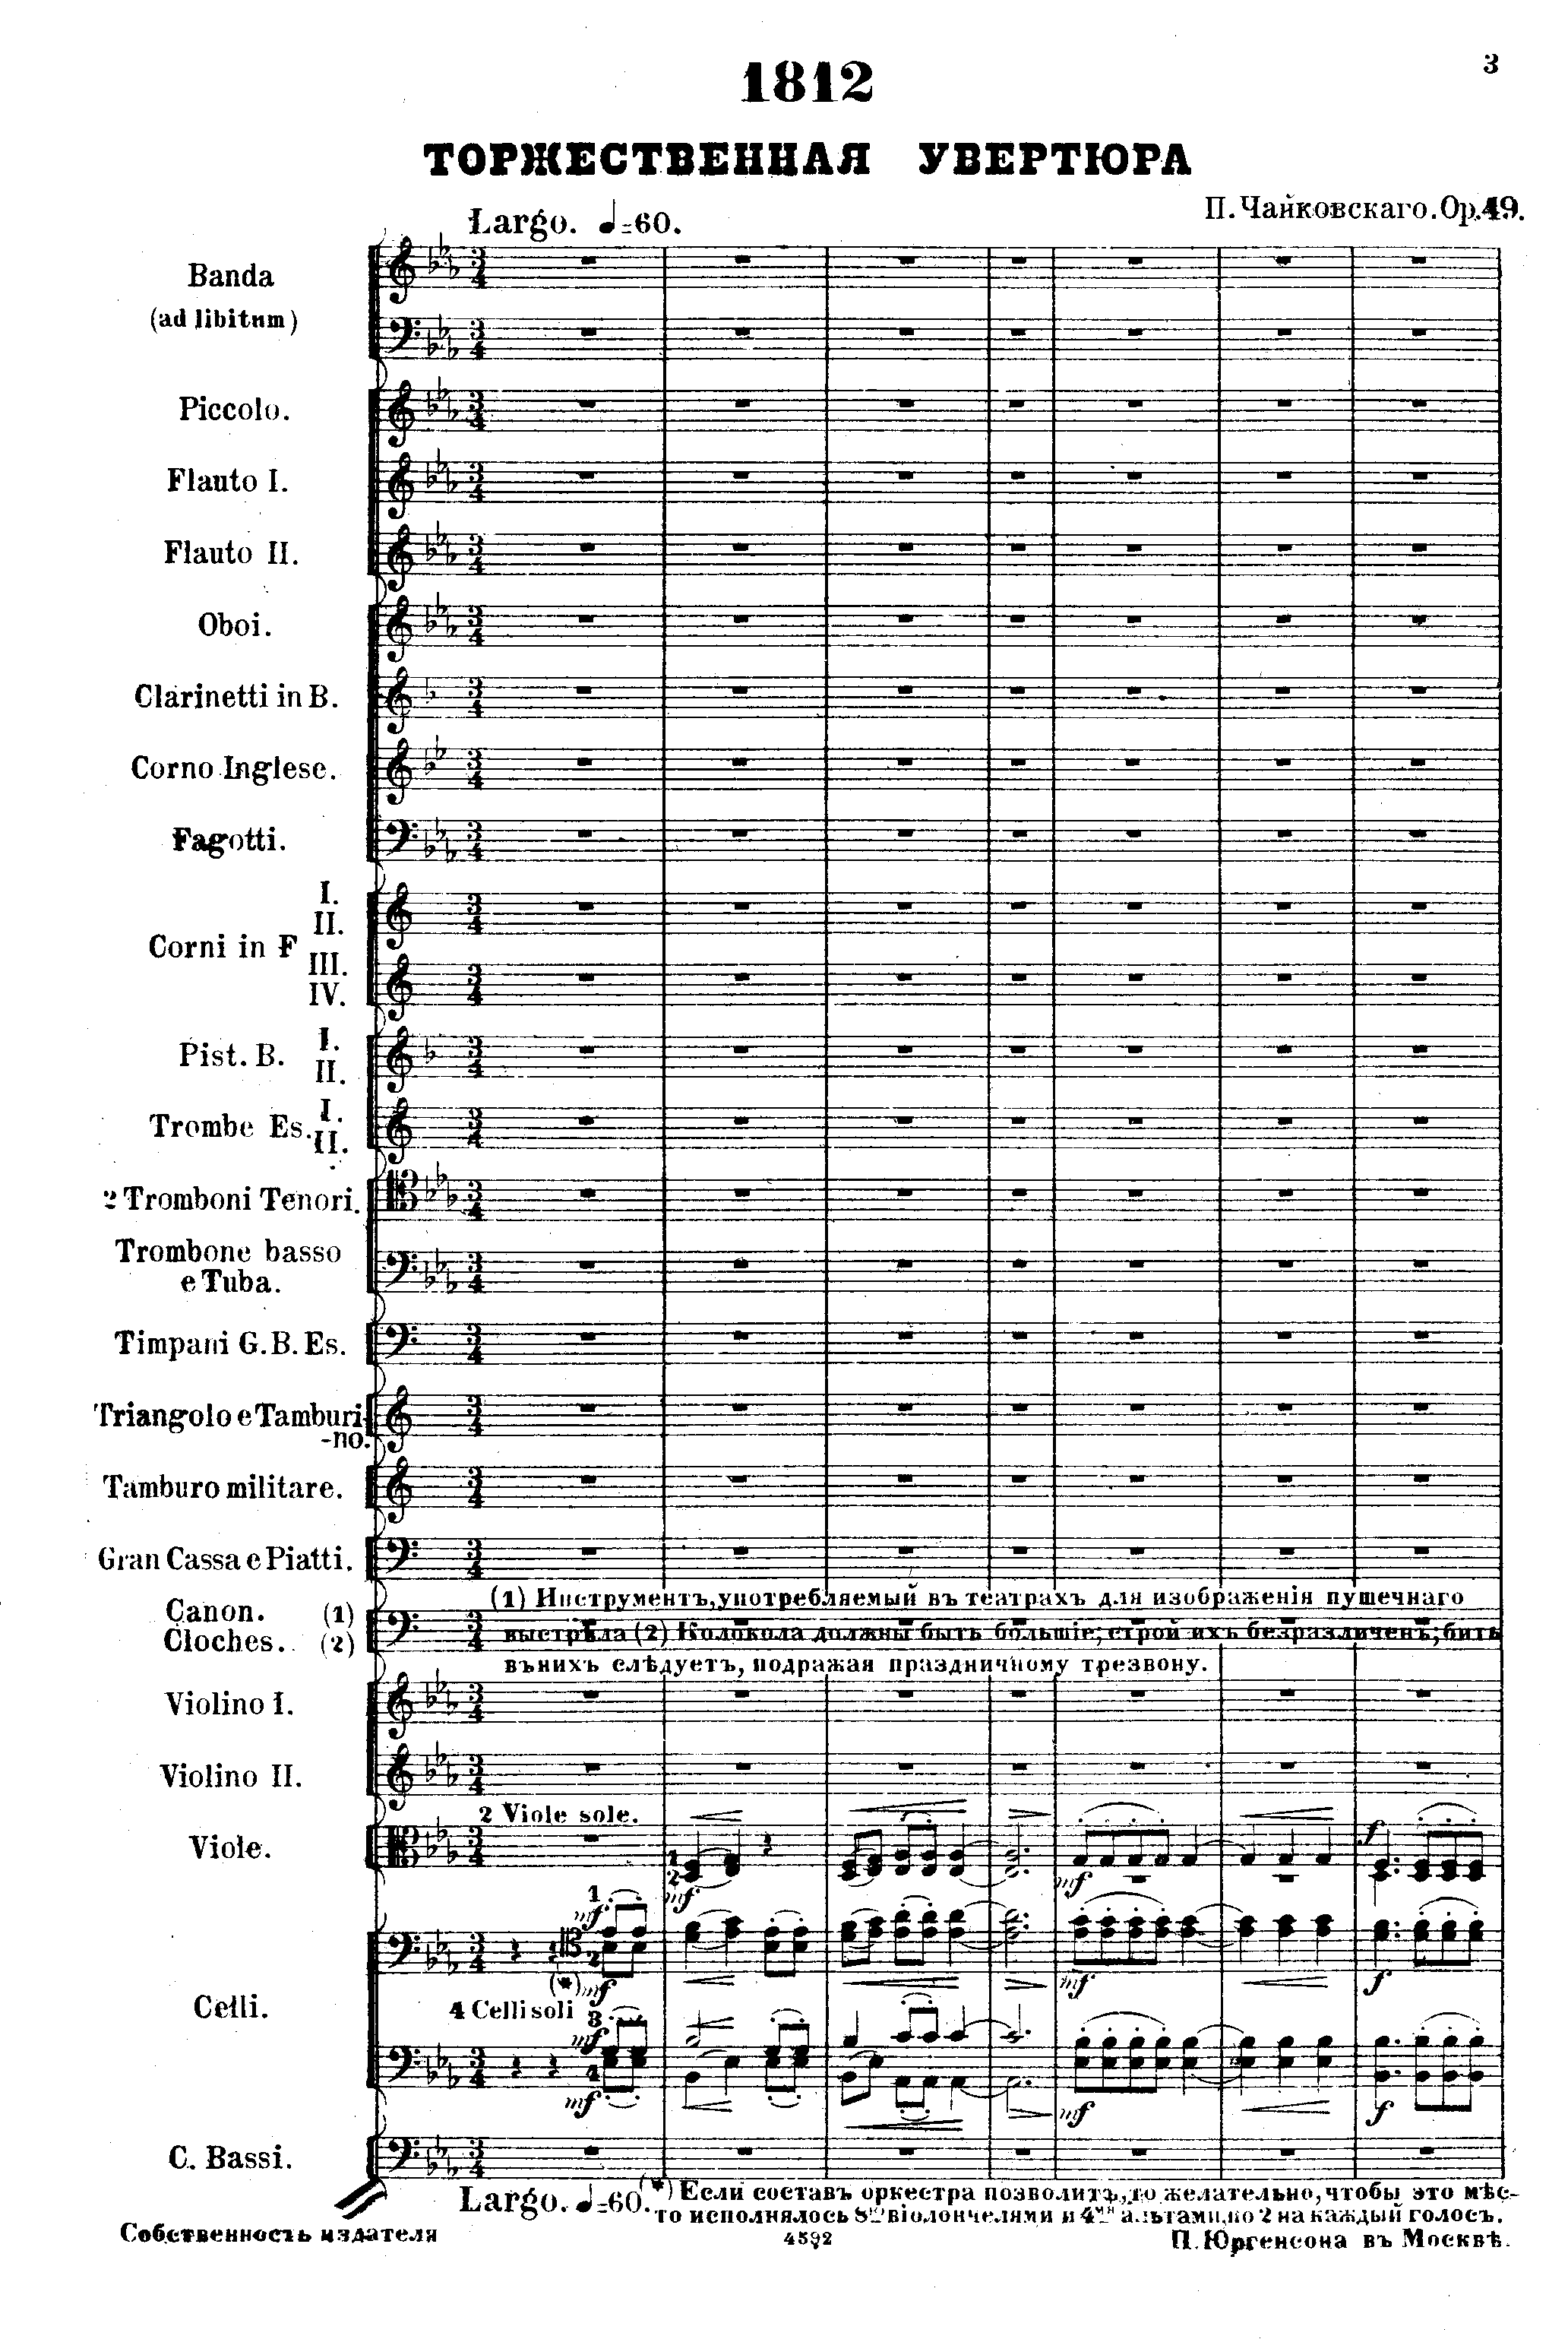 1812 Overtureピアノ譜